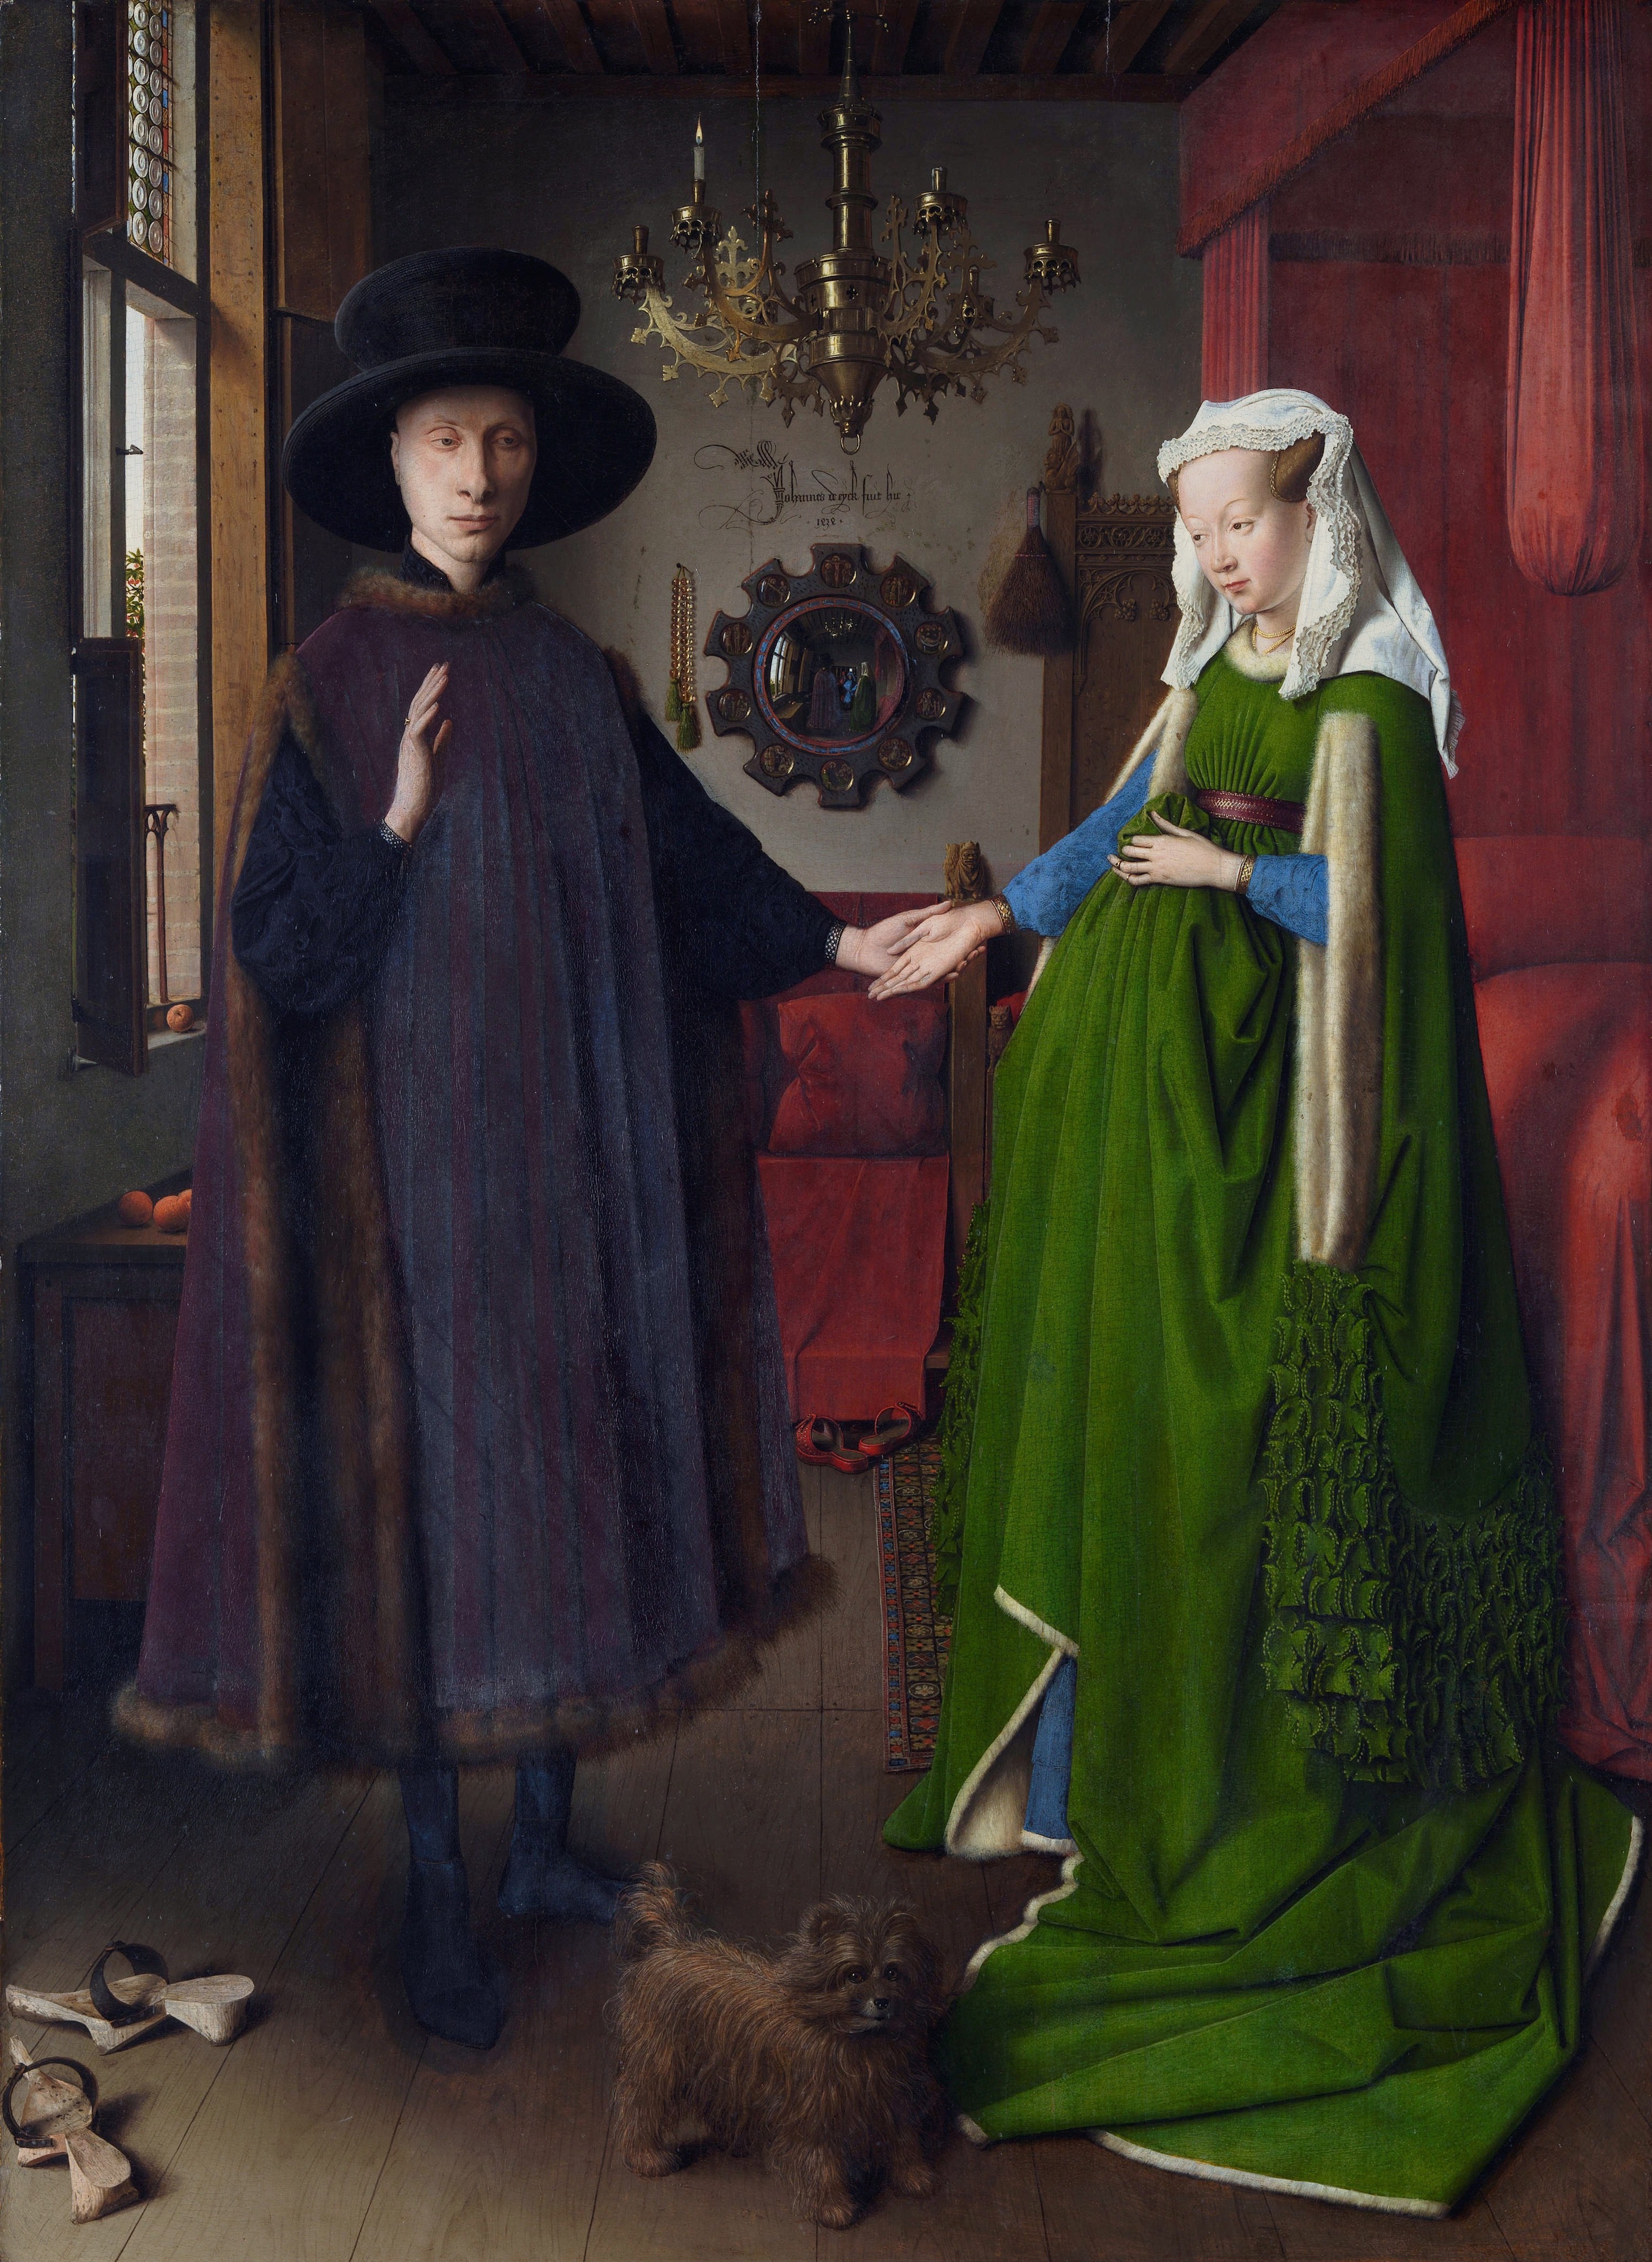 Giovanni Arnolfini seine Frau Giovanna Cenami by Jan van Eyck - 1434 - 82 × 59.5 cm National Gallery